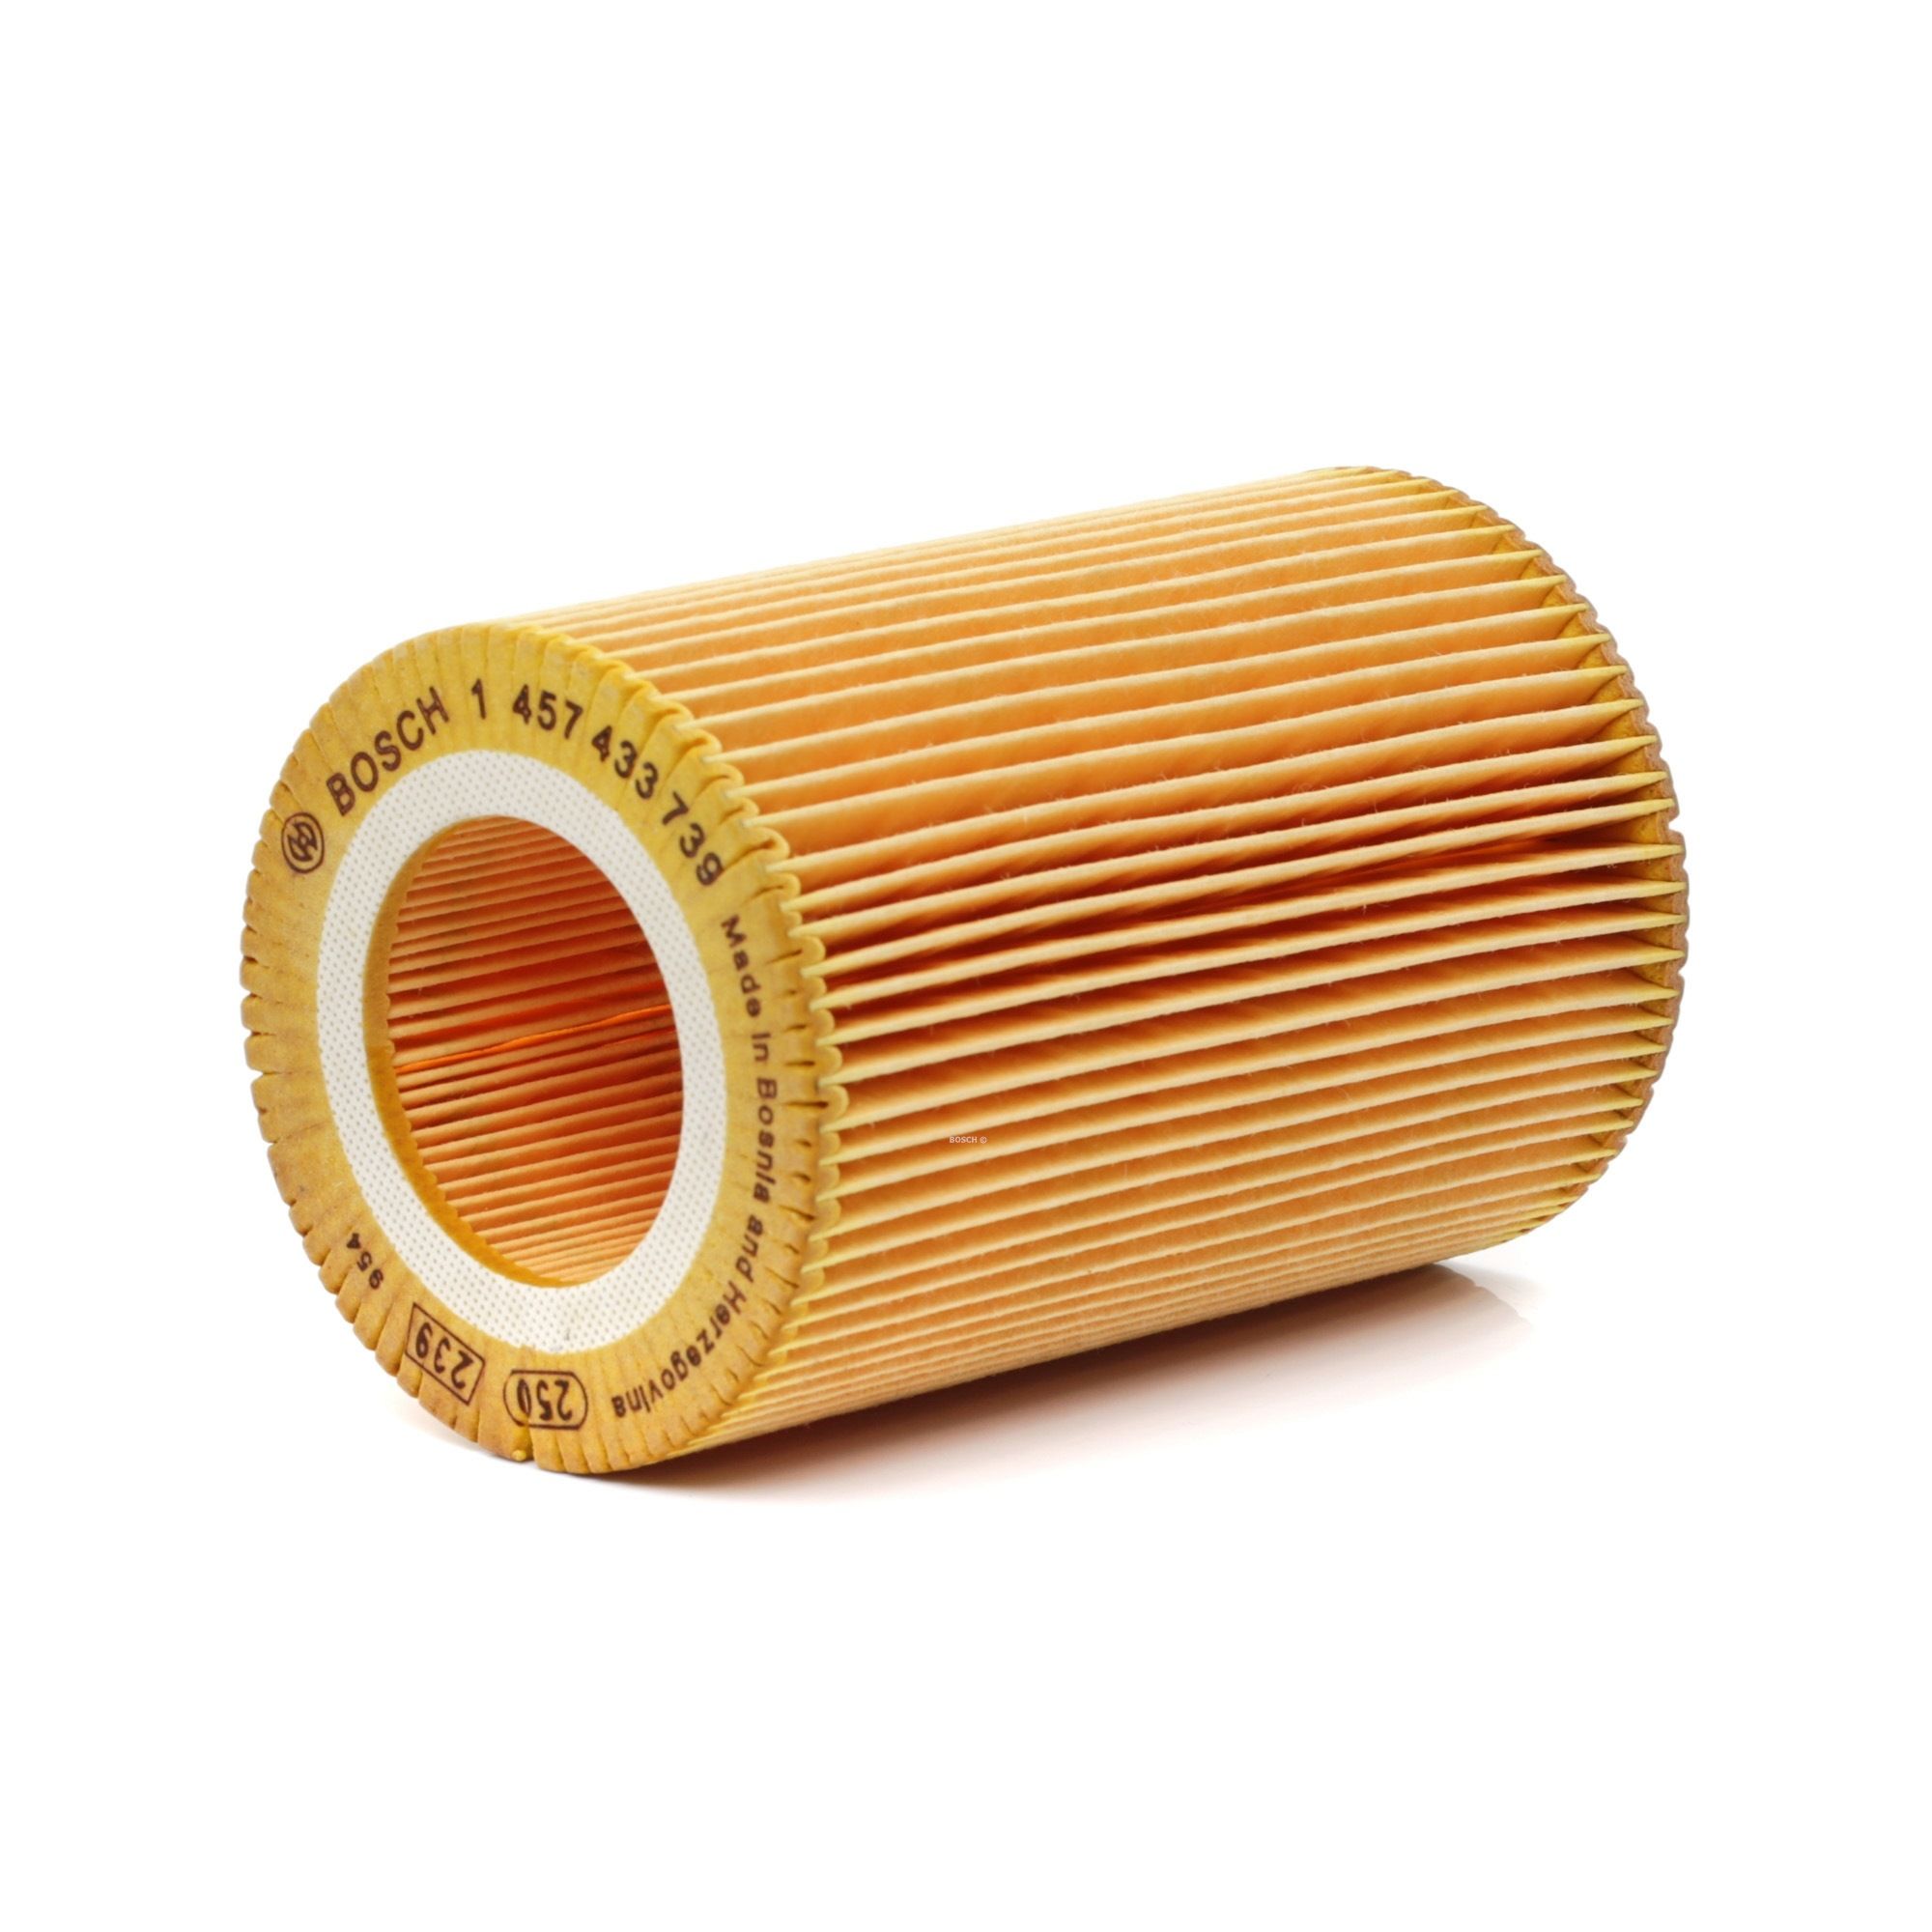 1 457 433 739 BOSCH Air filters SMART 135mm, 90,9mm, Filter Insert